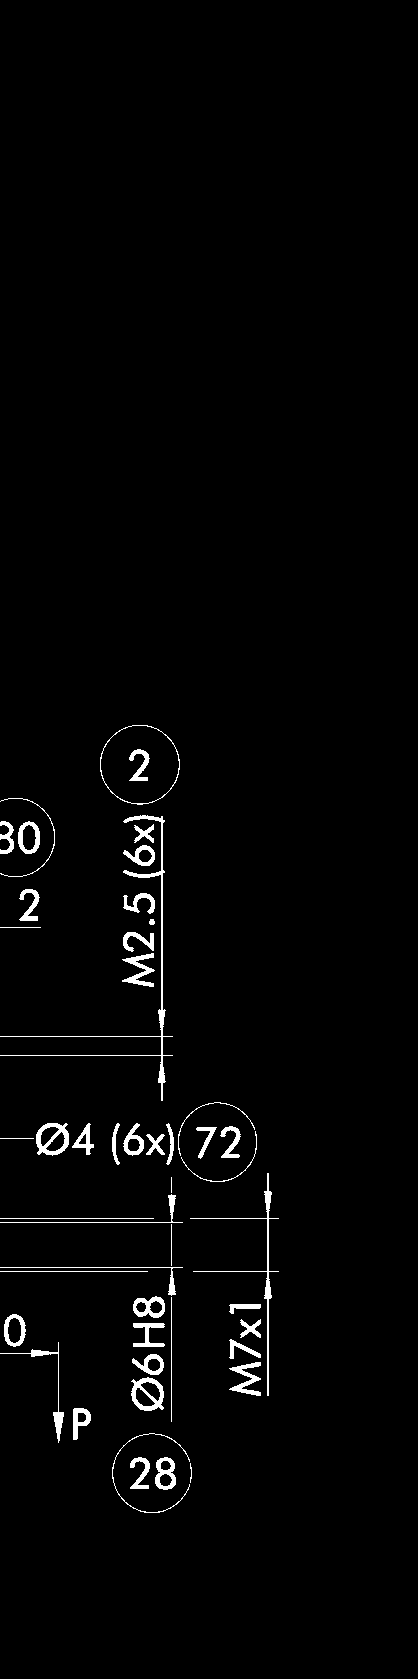 PZB-plus Funktonsbeschrebung Der Kolben wrd über Druckluft nach oben bzw. unten bewegt.